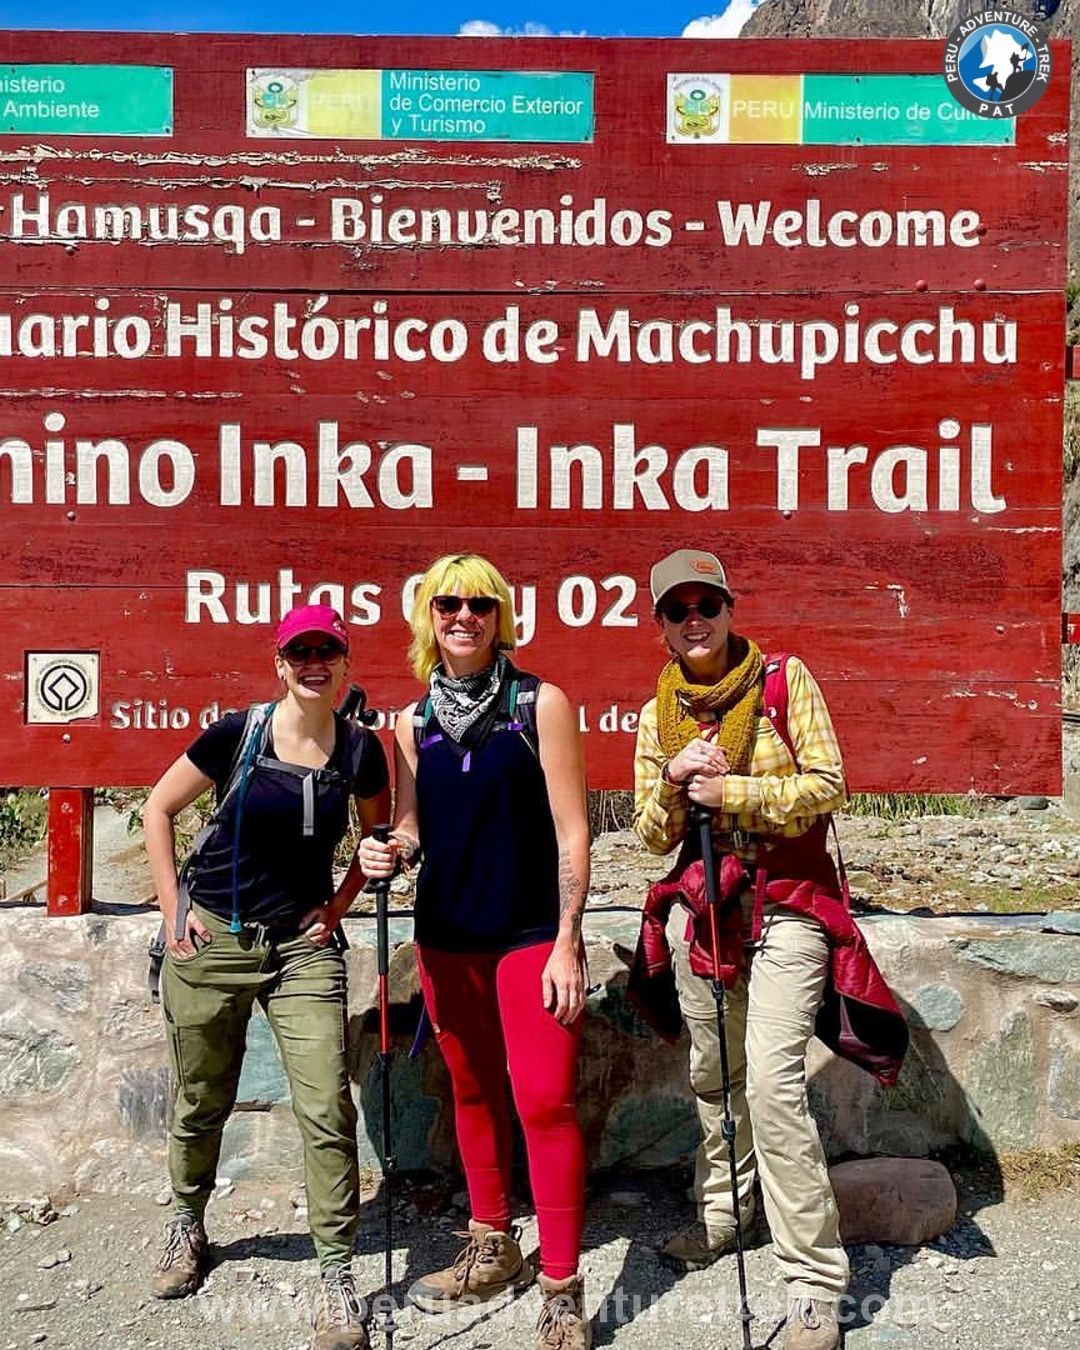 Trilha Inca Clássica Machu Picchu 4 Dias